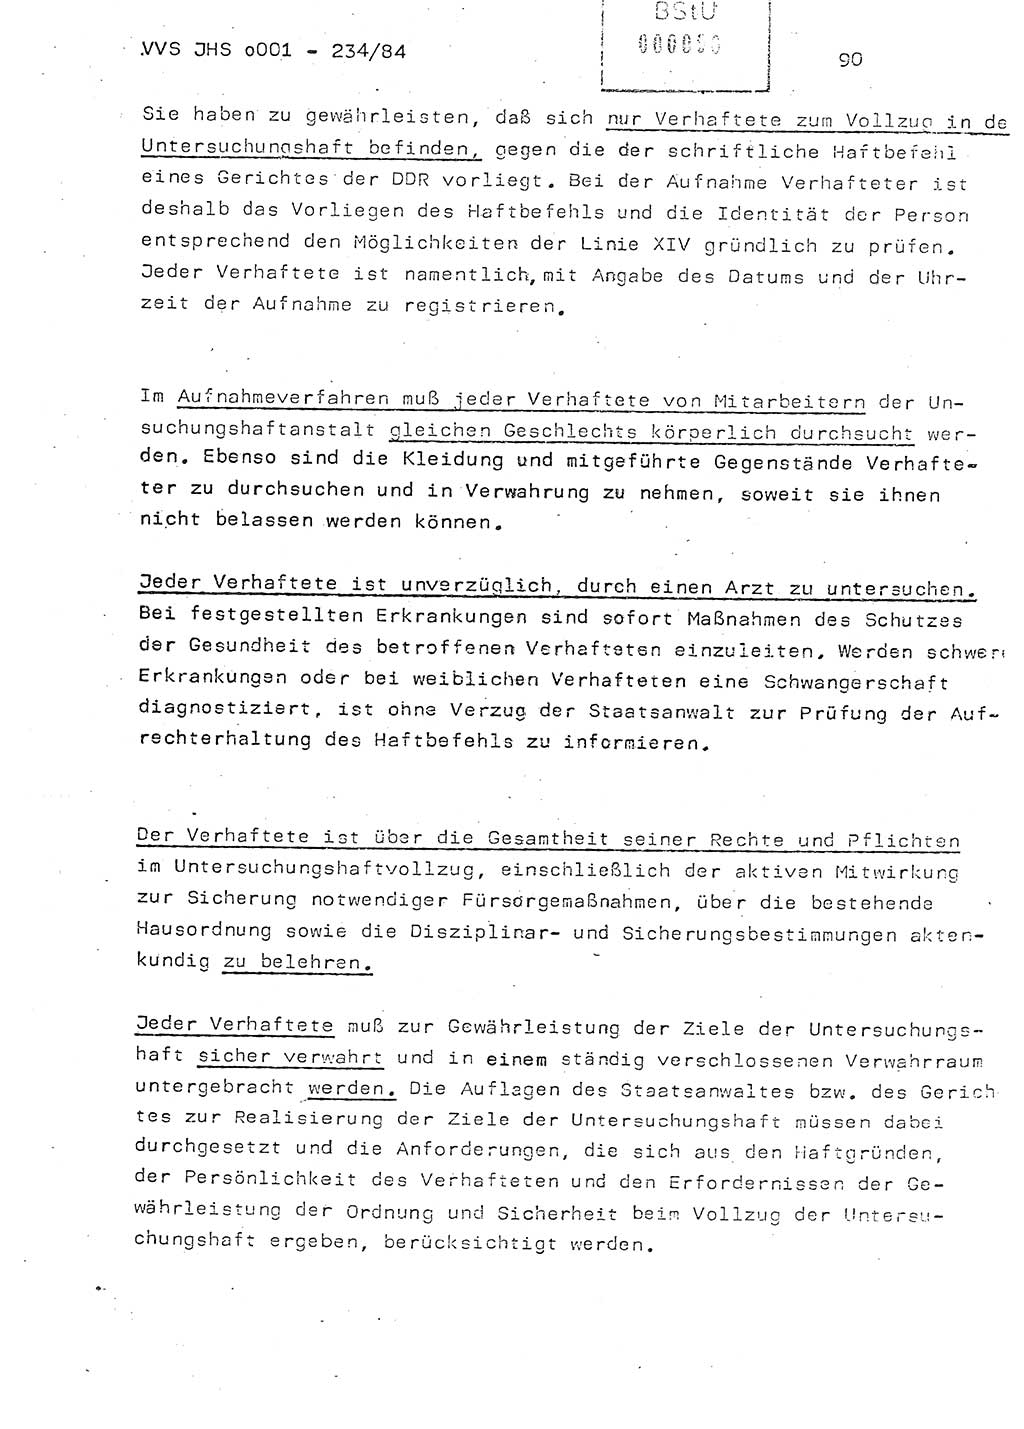 Dissertation Oberst Siegfried Rataizick (Abt. ⅩⅣ), Oberstleutnant Volkmar Heinz (Abt. ⅩⅣ), Oberstleutnant Werner Stein (HA Ⅸ), Hauptmann Heinz Conrad (JHS), Ministerium für Staatssicherheit (MfS) [Deutsche Demokratische Republik (DDR)], Juristische Hochschule (JHS), Vertrauliche Verschlußsache (VVS) o001-234/84, Potsdam 1984, Seite 90 (Diss. MfS DDR JHS VVS o001-234/84 1984, S. 90)